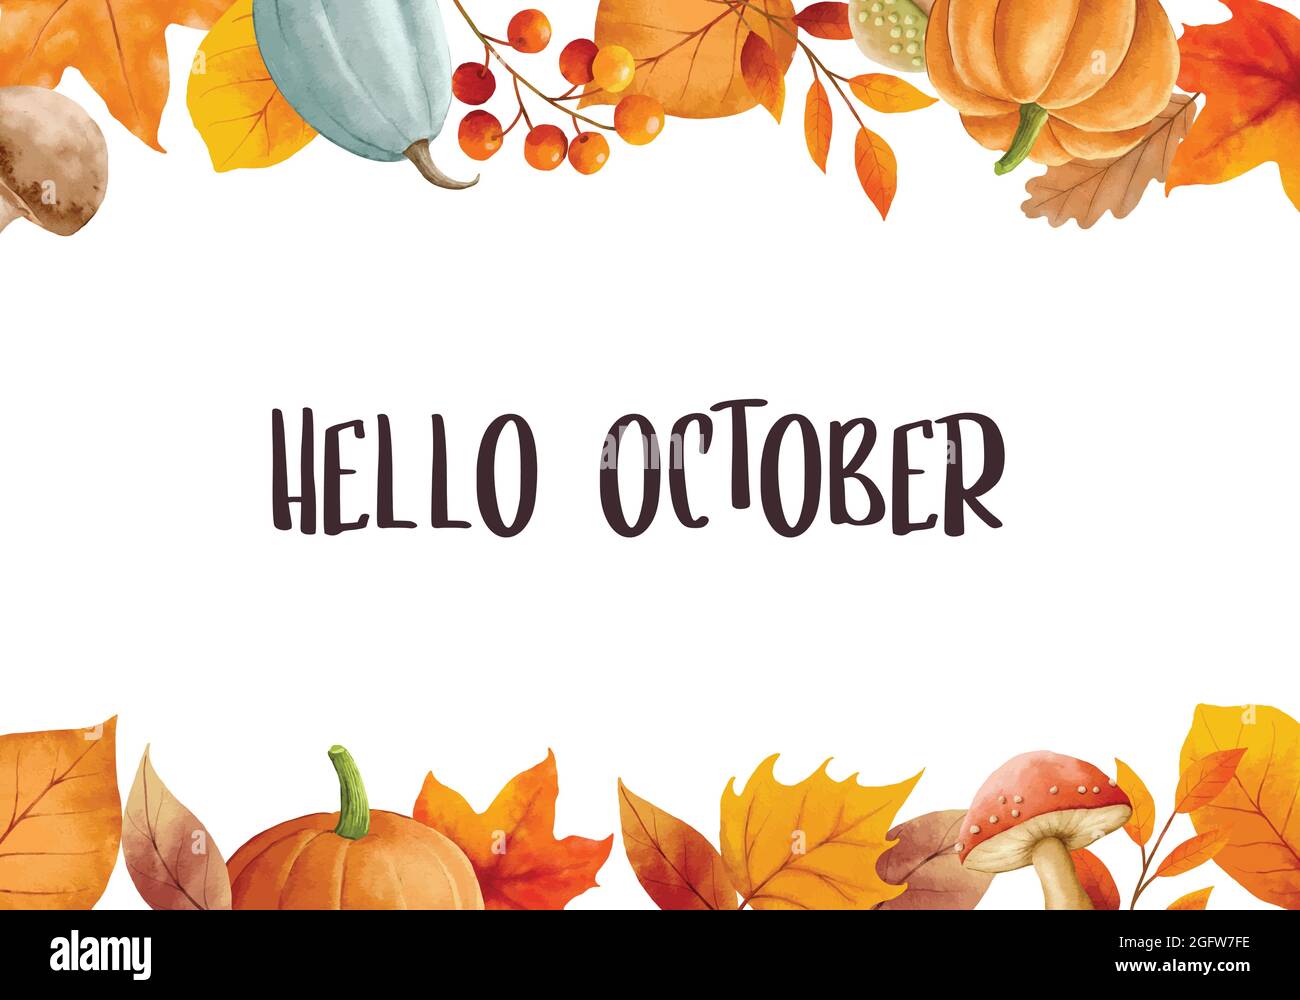 Hallo oktober mit verzierten Blättern Blumenrahmen. Herbst oktober handgezeichnetes Design mit Schriftzügen. Stock Vektor